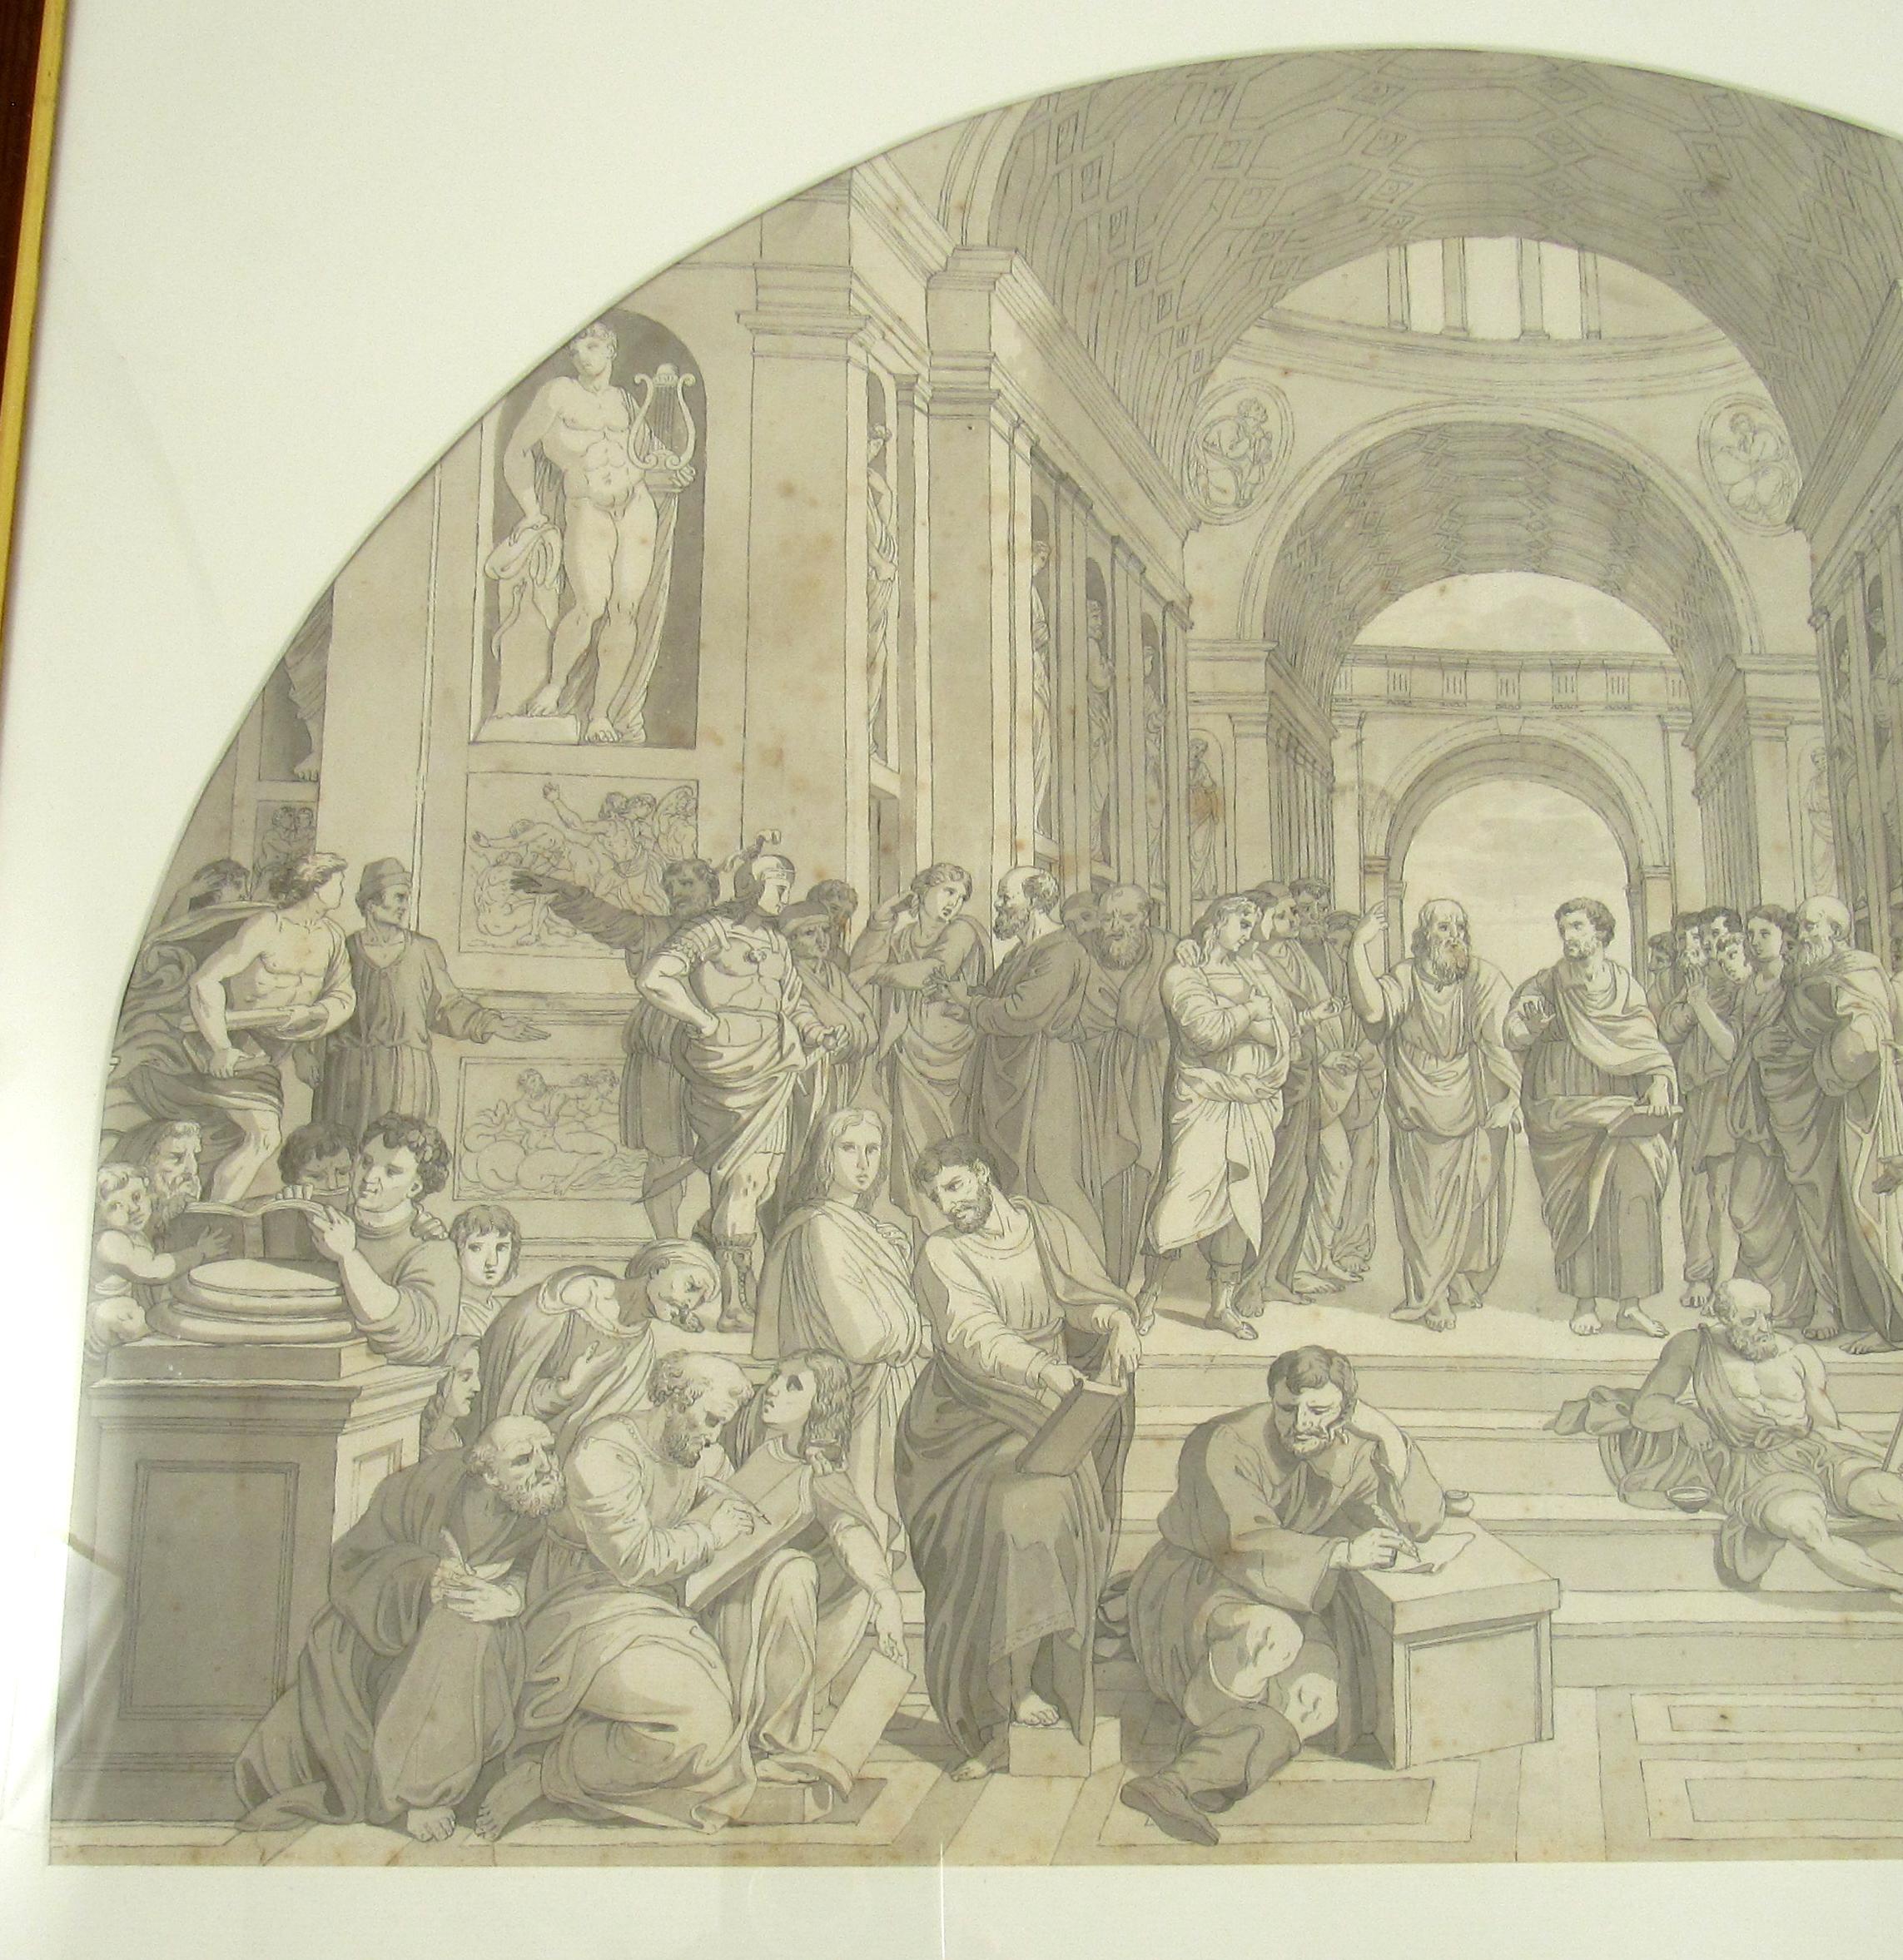 Die Schule von Athen nach Raphael

18. Jahrhundert
Feder und Tusche Lavierung Zeichnung
Rahmen aus glasiertem Holz, ca. 62 x 78,5 cm
Montiert hinter einer gewölbten Matte.

Diese großformatige Zeichnung ist dem berühmten Fresko 